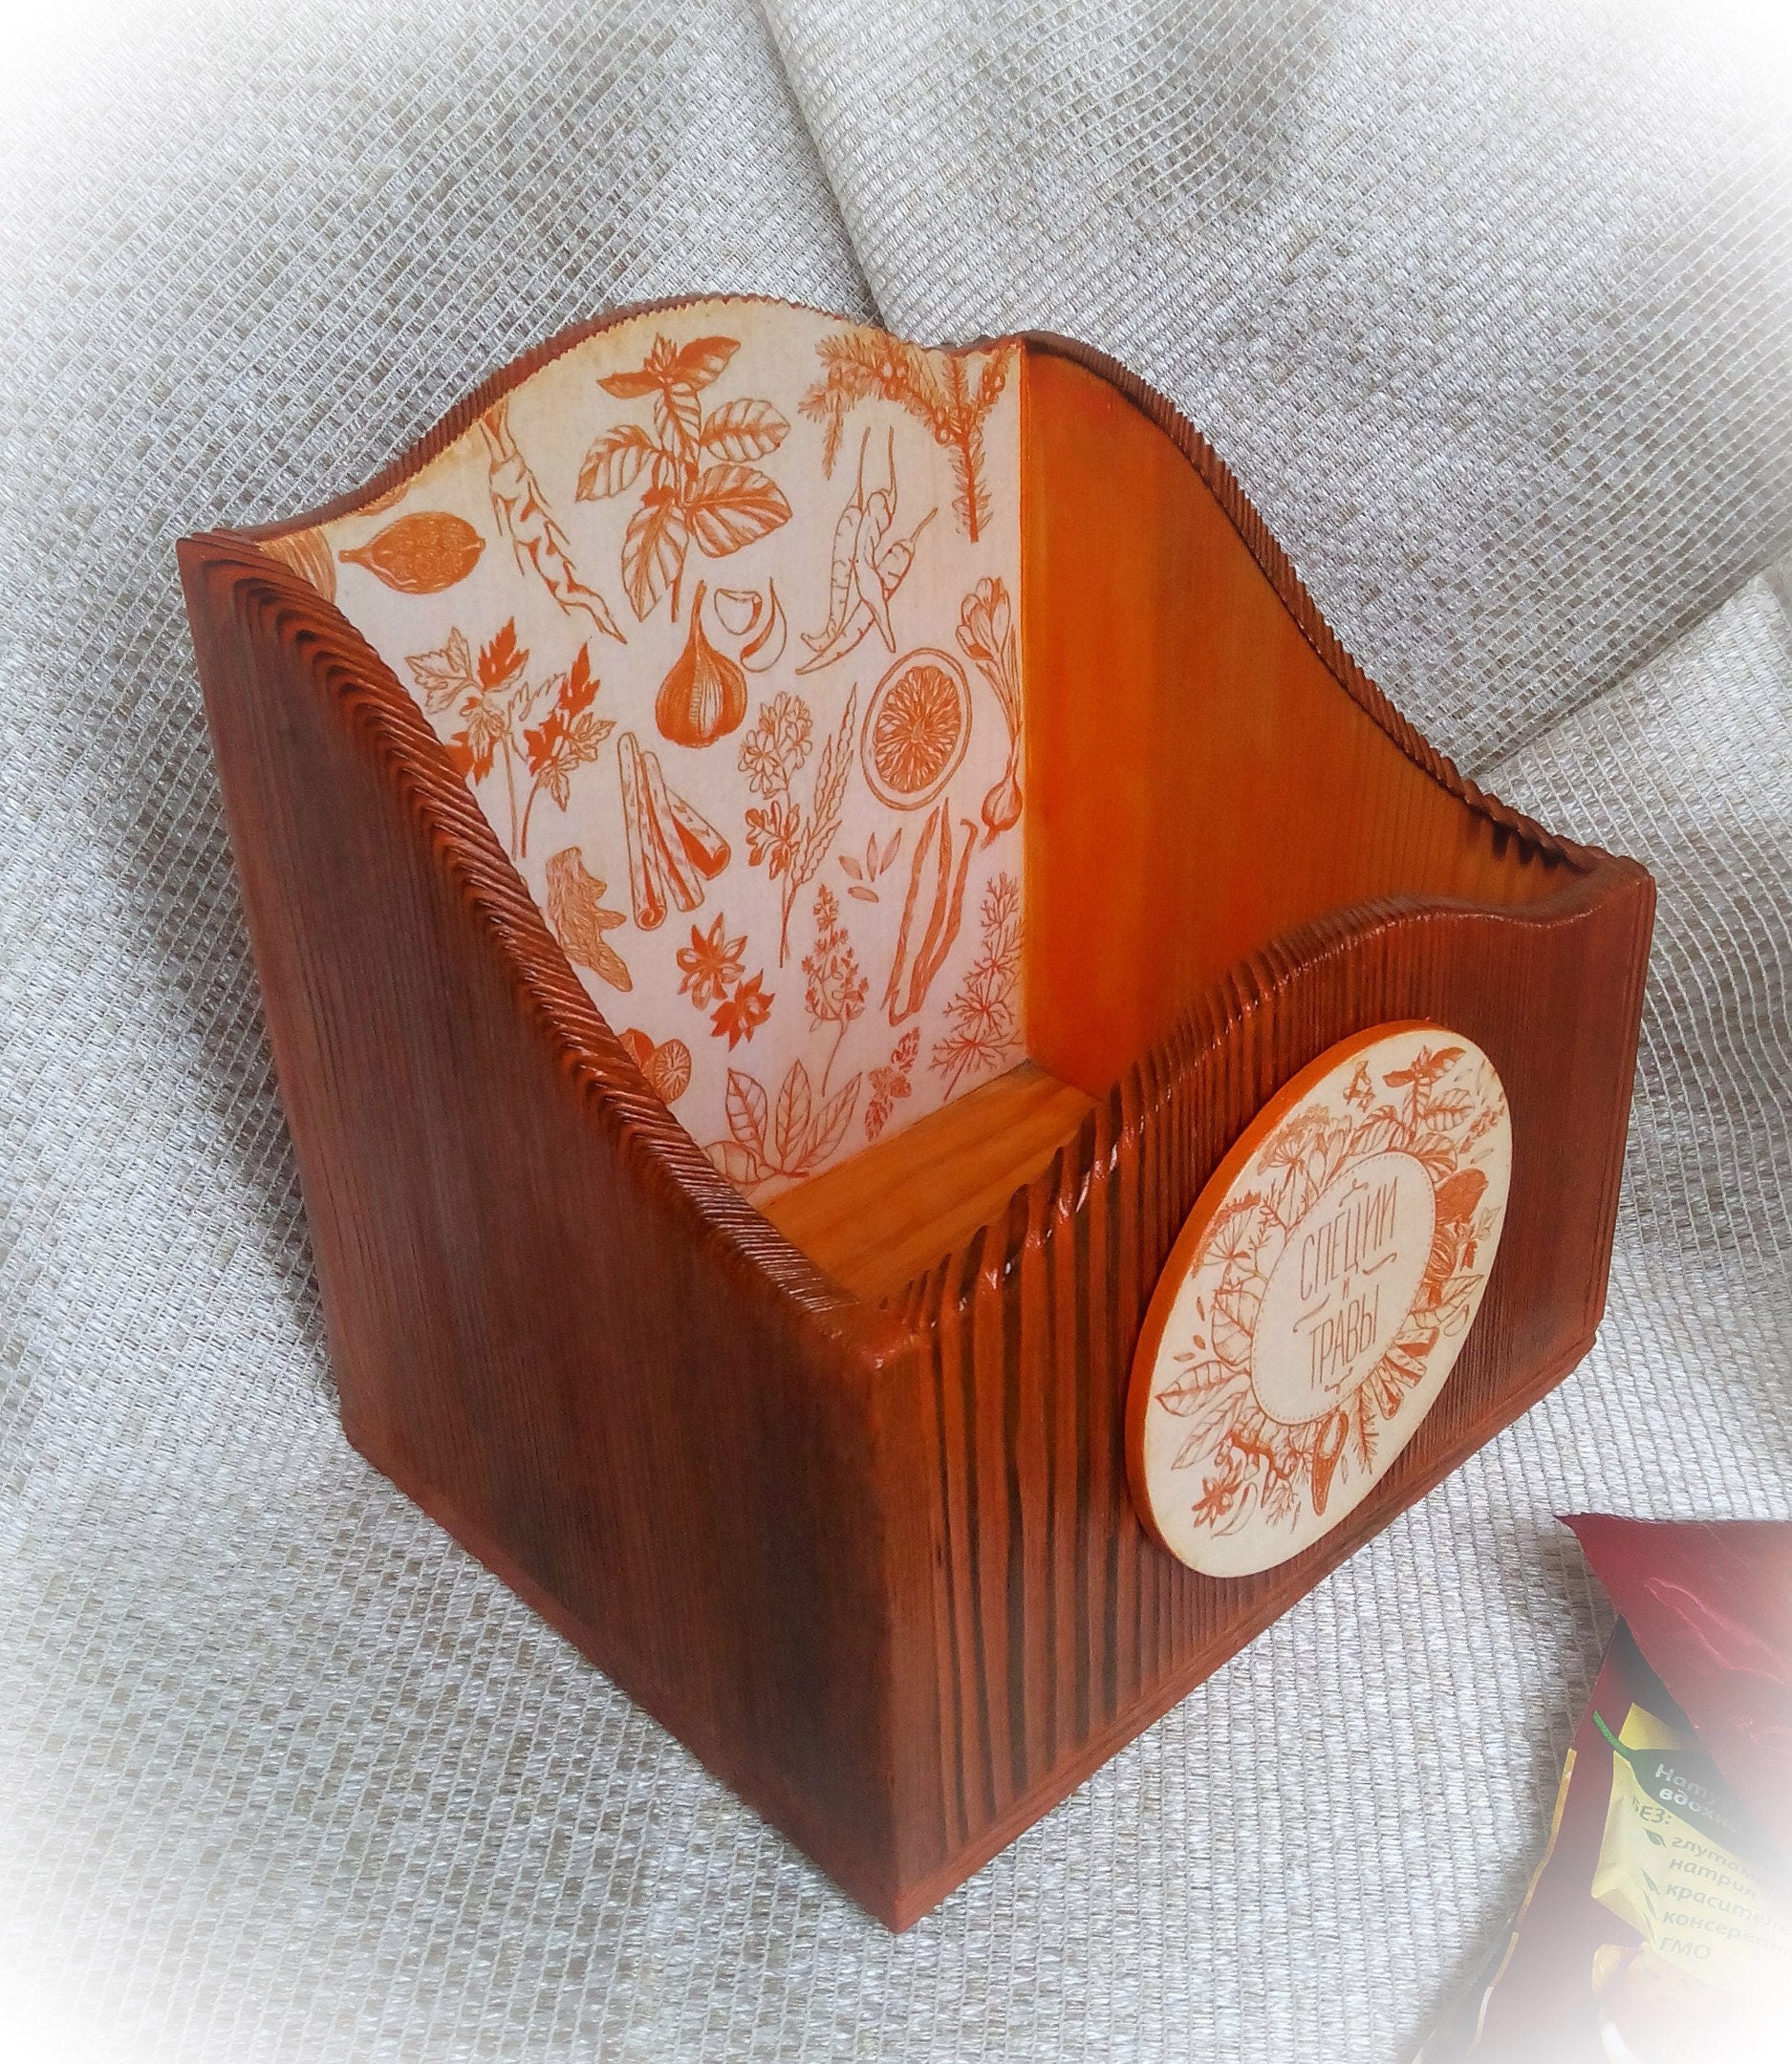 Wooden kitchen storage Recipe box Kitchen accessory Orange | Etsy